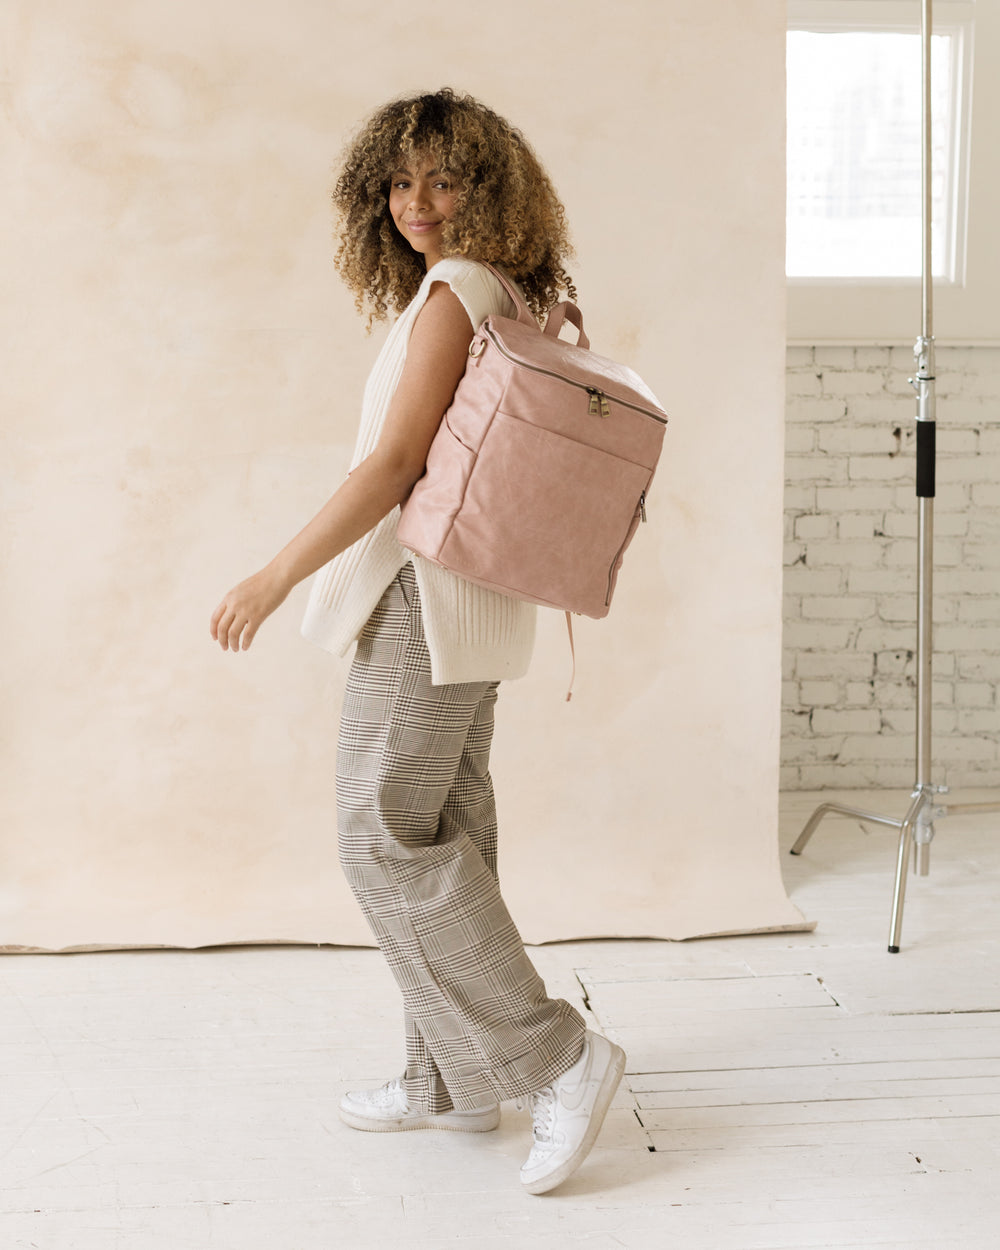 Chic Designer Diaper Handbag - Happ Paige Carryall Black - Soft & Feminine Diaper Backpack for Fashion Forward Moms